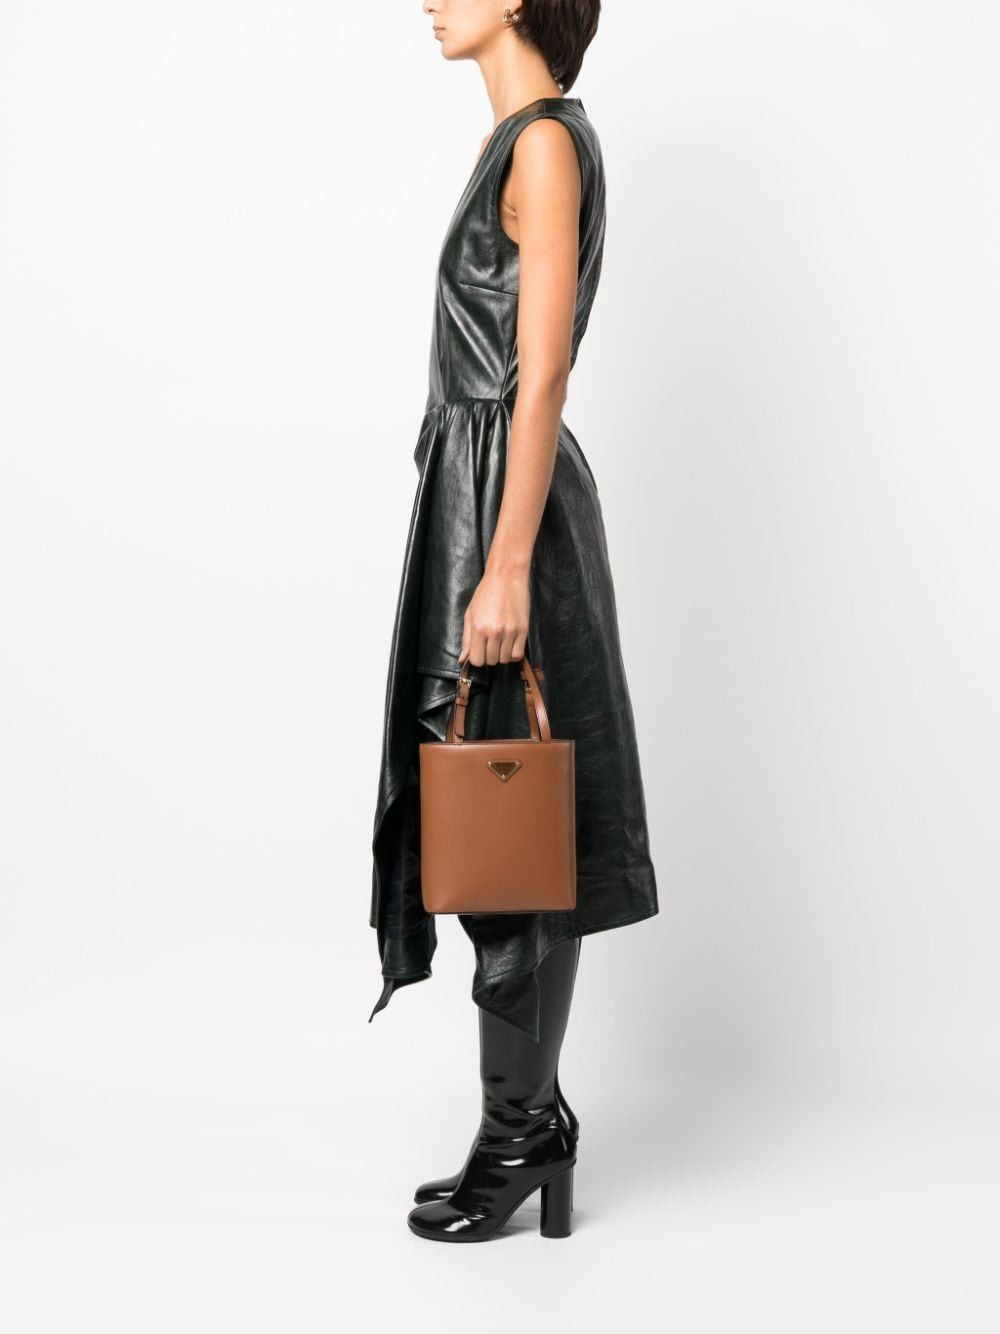 女性原版大手提皮包-棕色 100%納帕牛皮-SS24